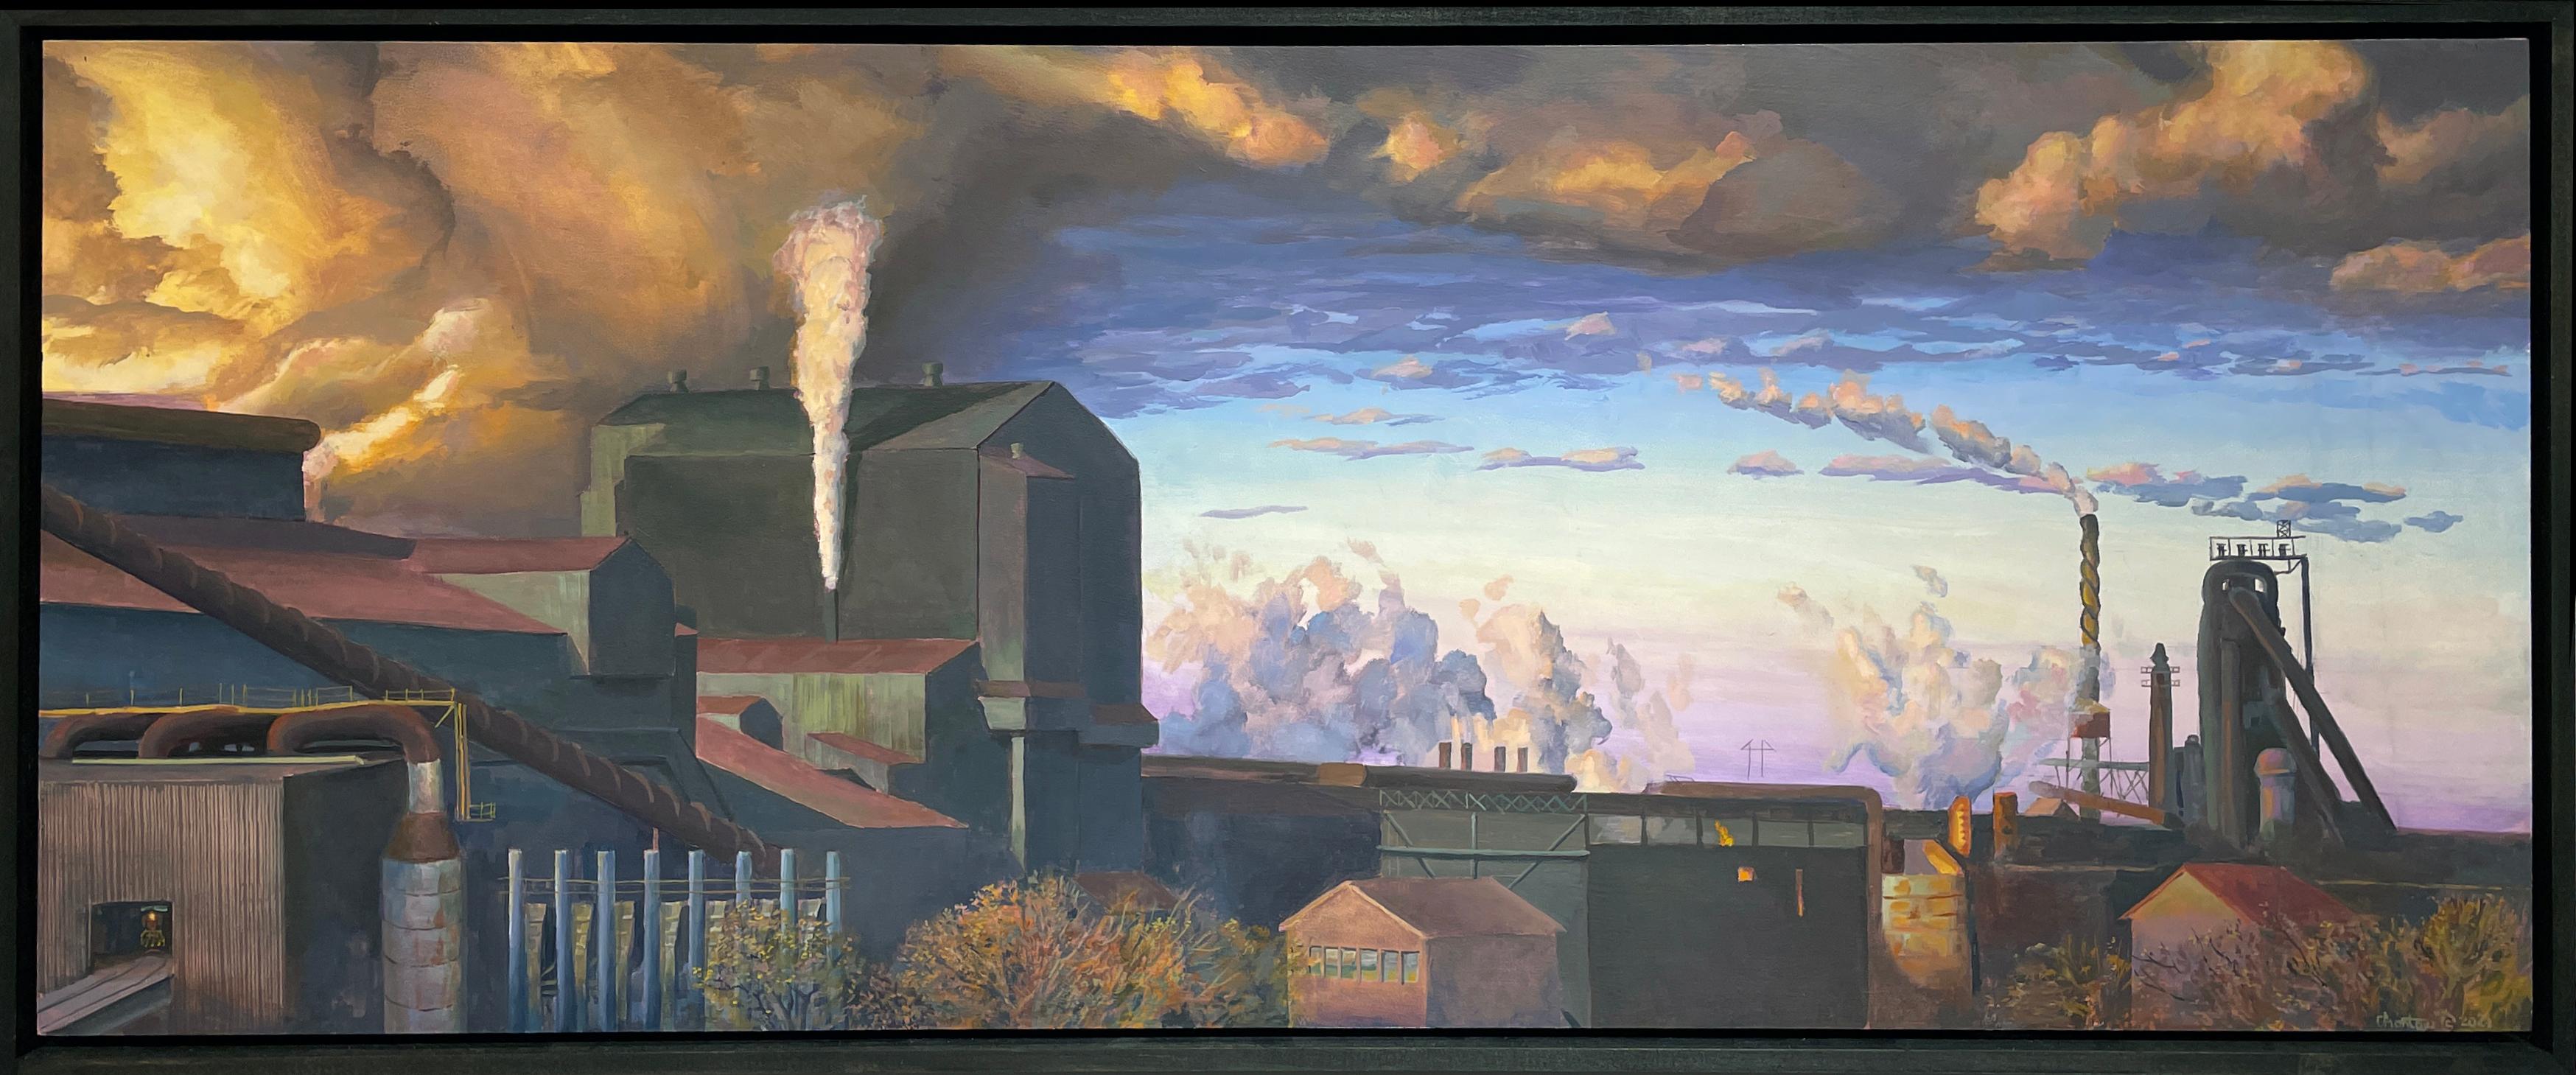 paintings of factories